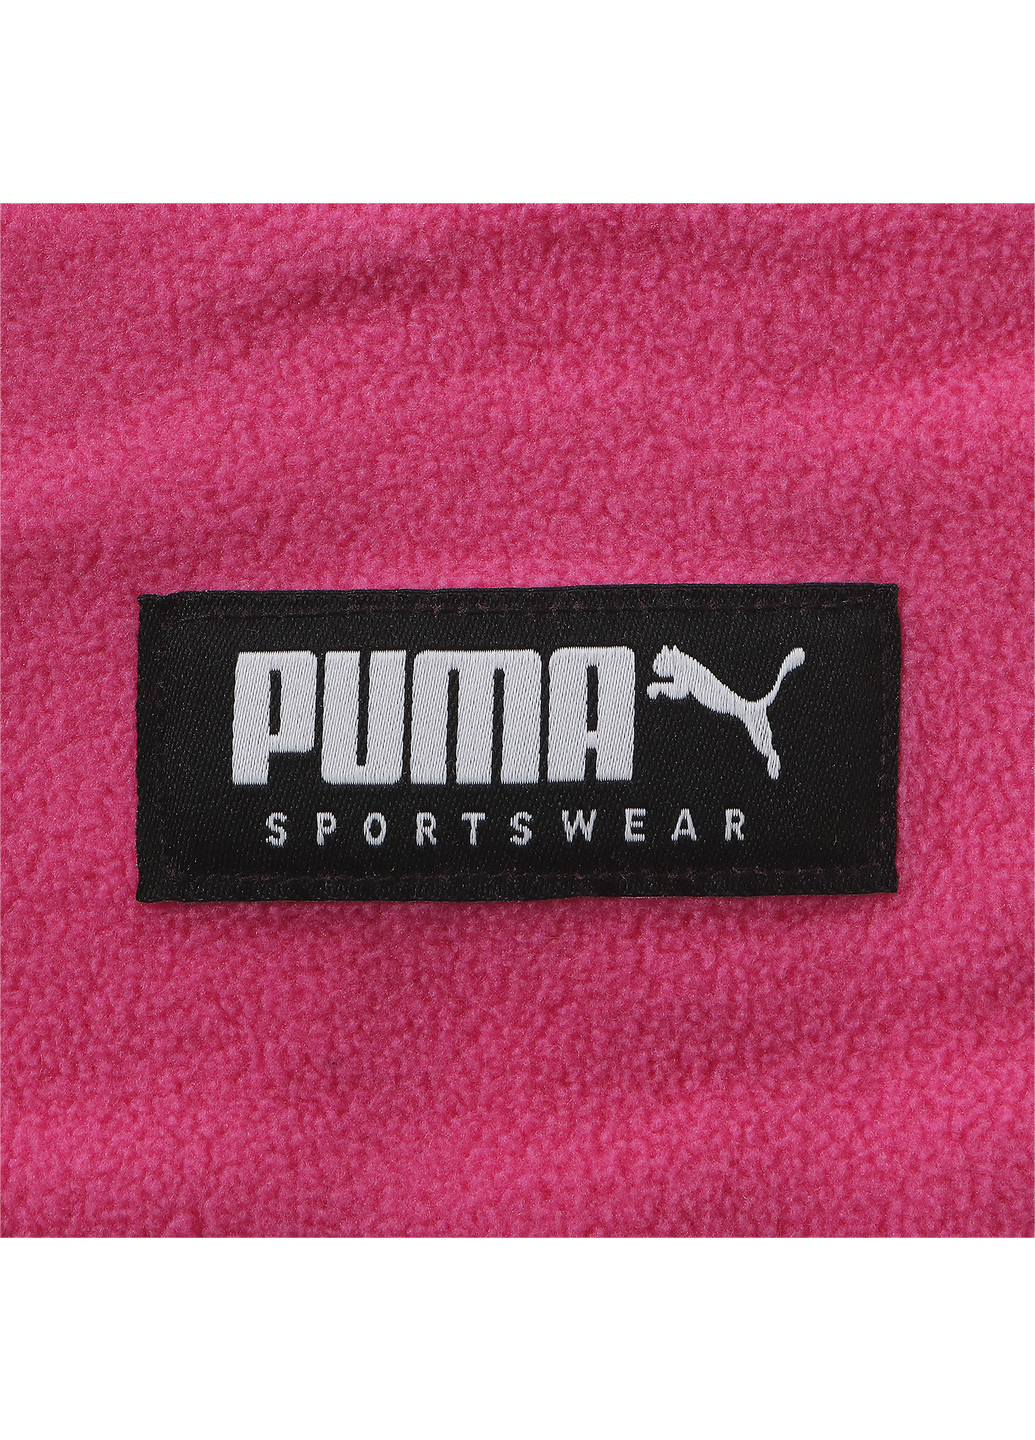 Шарф Puma однотонный розовый спортивный хлопок, полиэстер